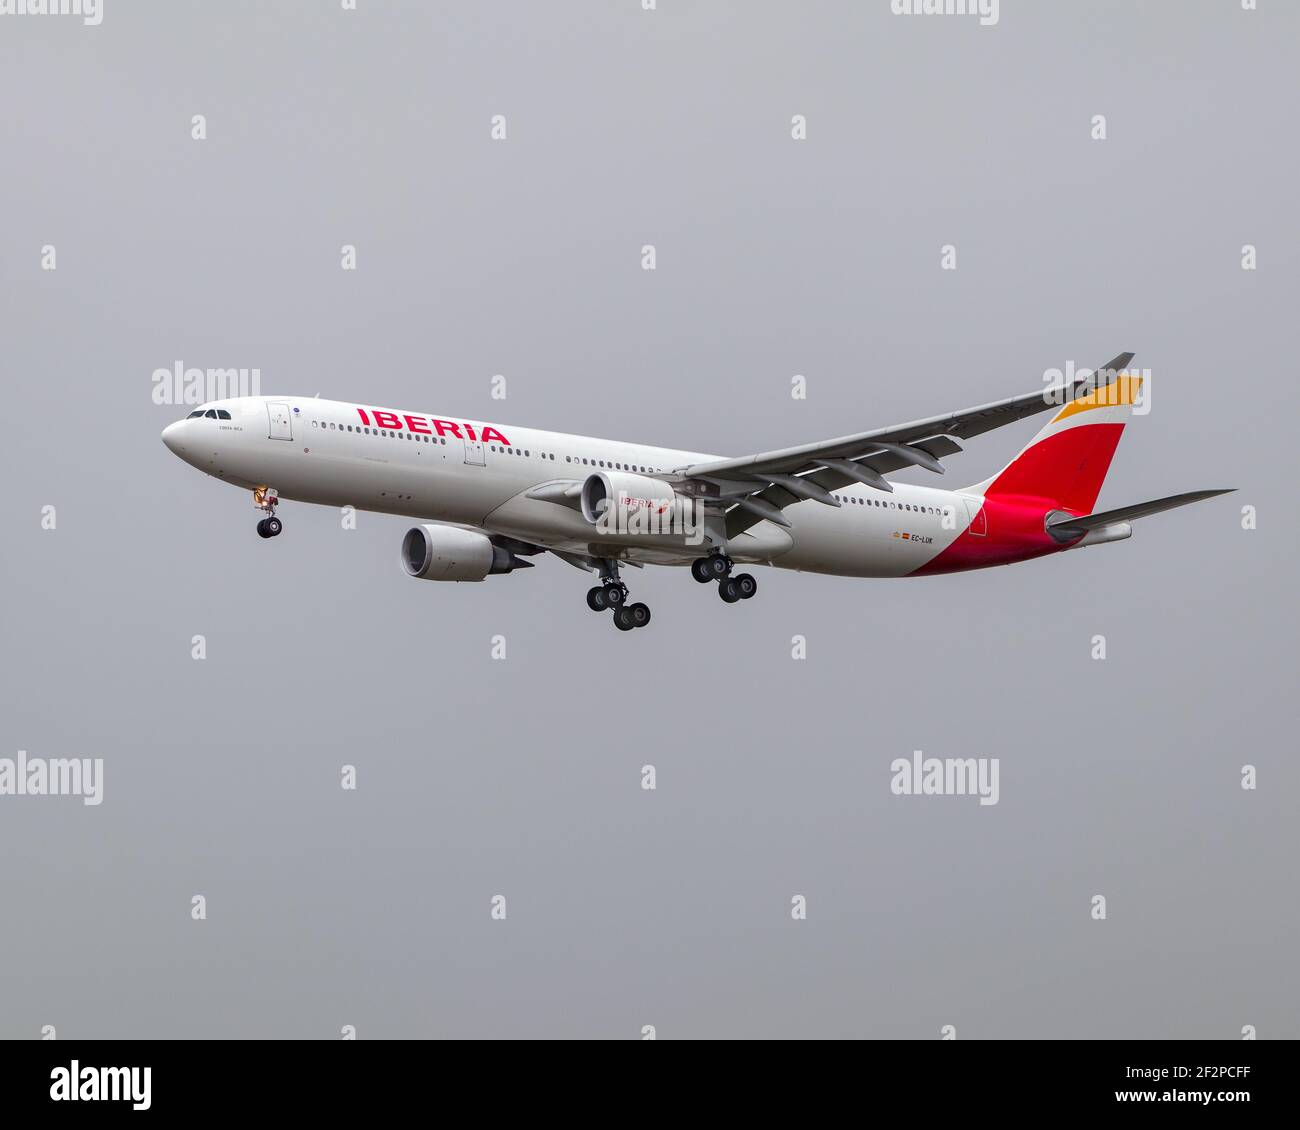 Londra, aeroporto di Heathrow - Gennaio 2020: Iberia Airlines, Airbus A330, registrazione EC-LUK Landing sulla pista 27L in un giorno grigio e overcast. PhotoGrap Foto Stock